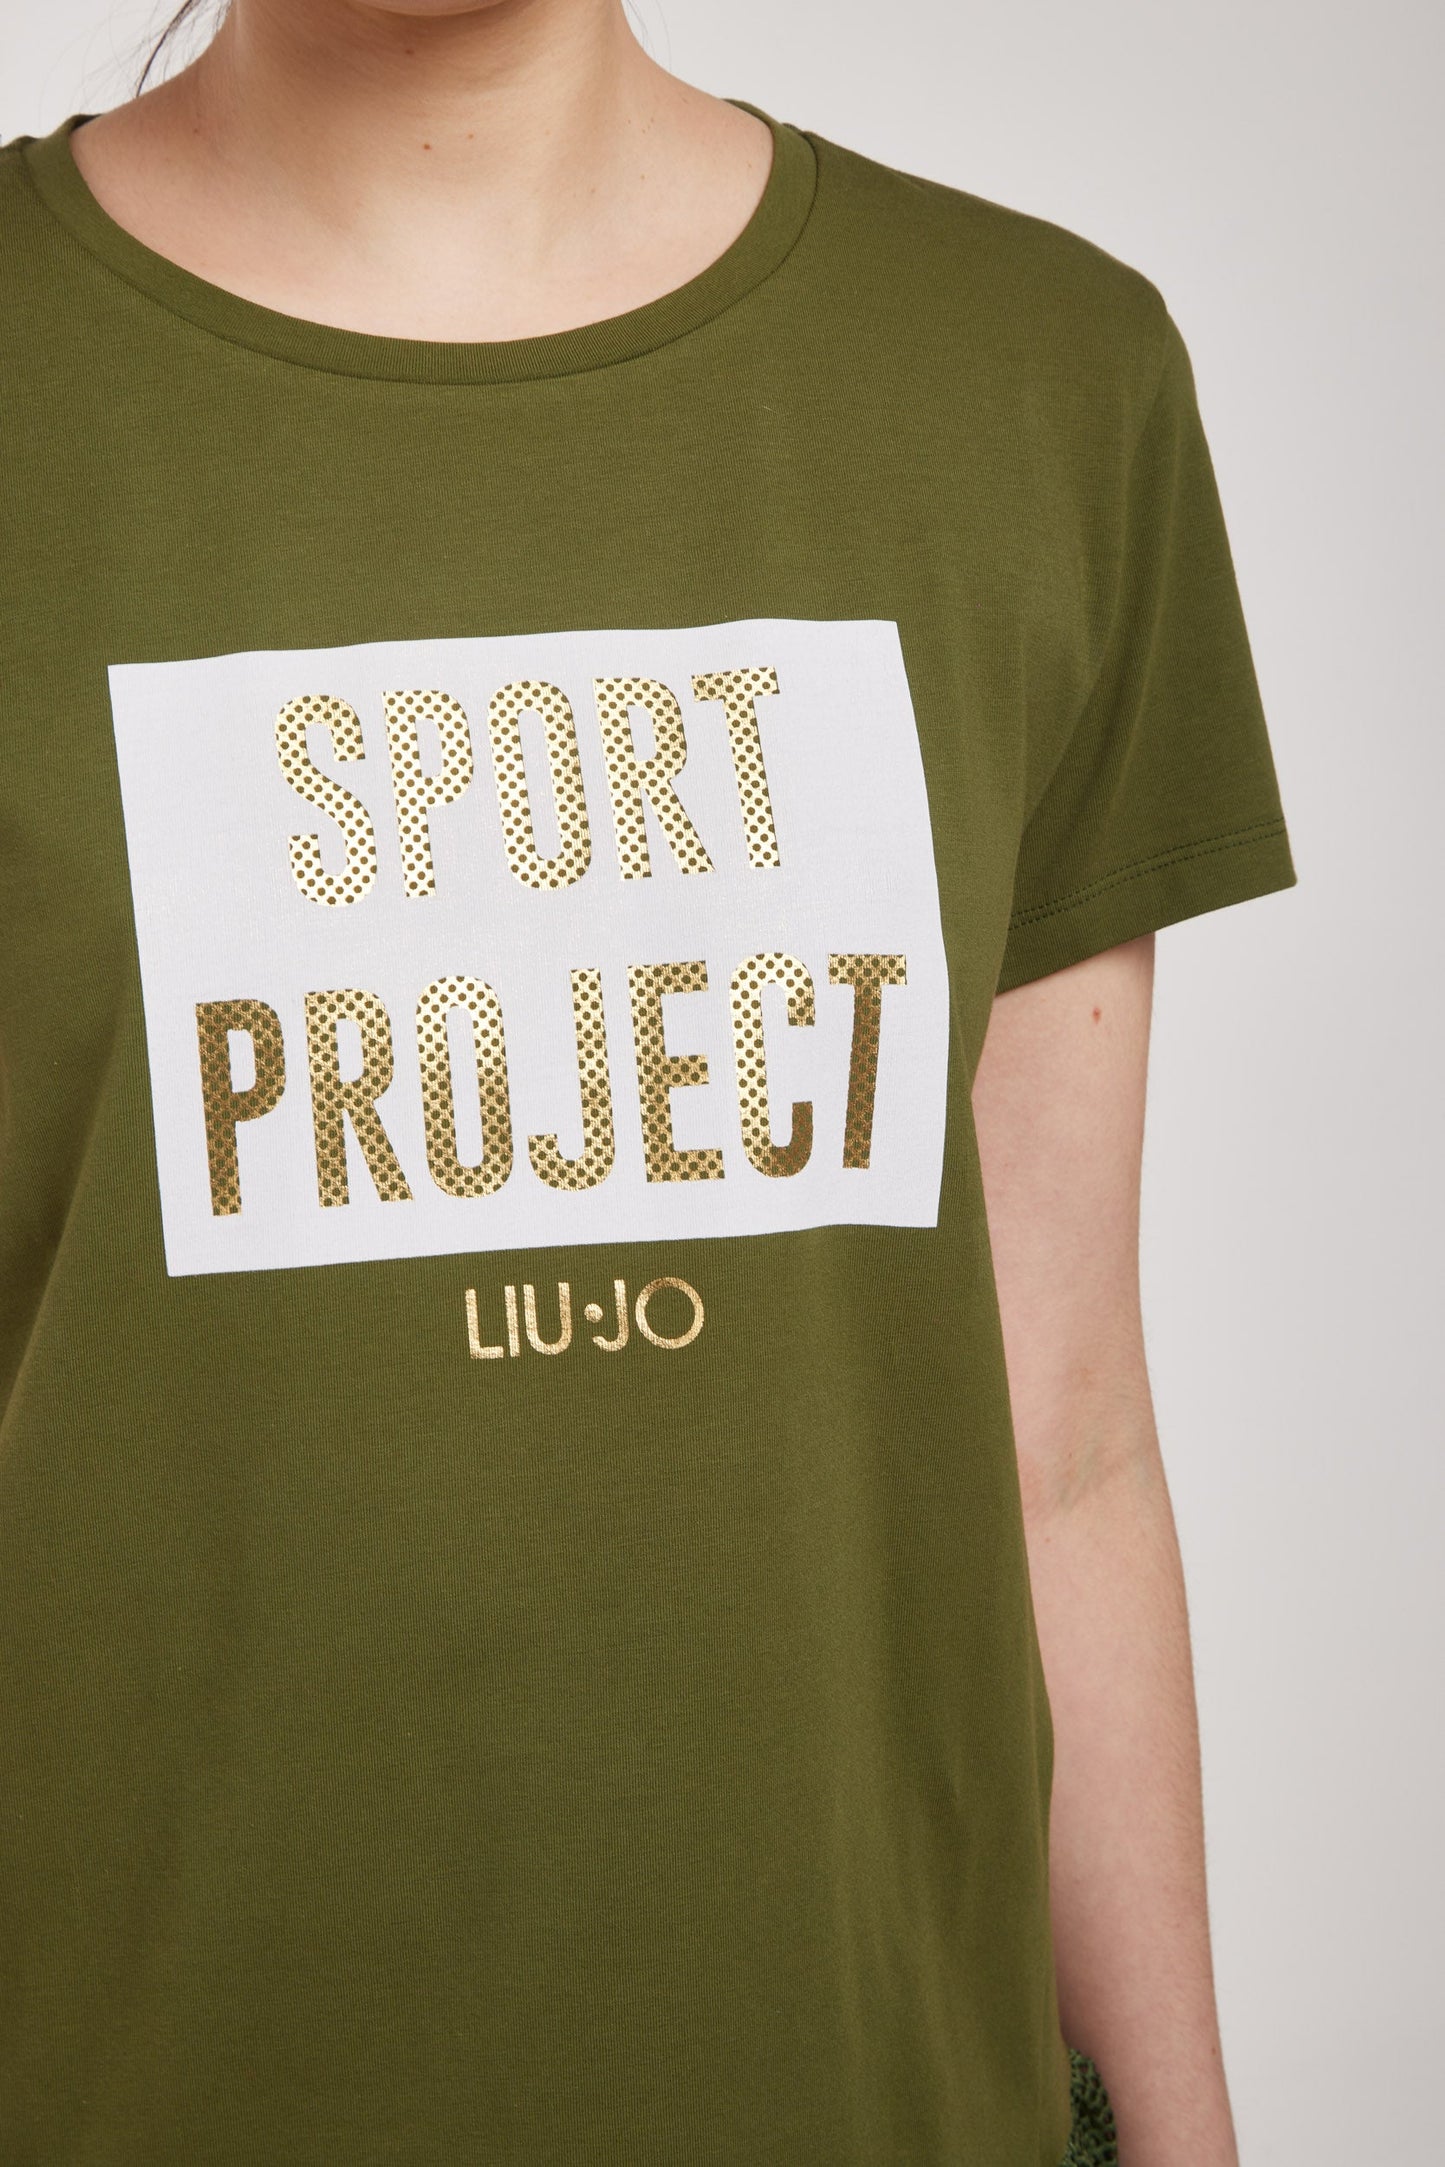 LIU-JO "SPORT PROJECT" T-Shirt Military Green